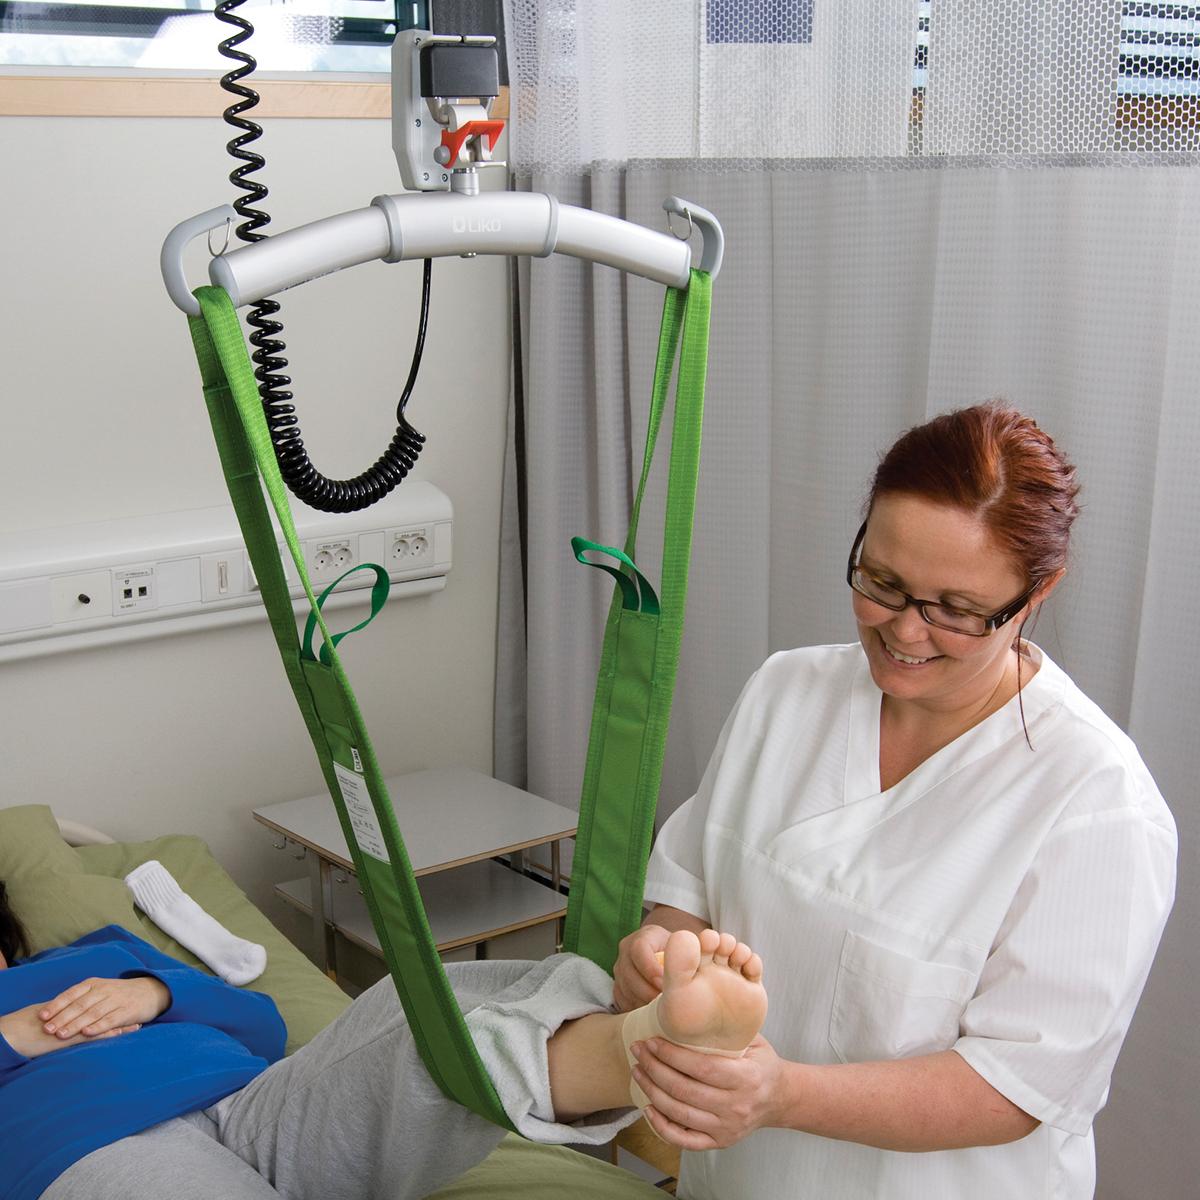 Dispositif d’aide au levage MultiStrap™ vert, utilisé pour lever le pied gauche d’un patient semi-allongé, maintenu par une clinicienne portant des lunettes